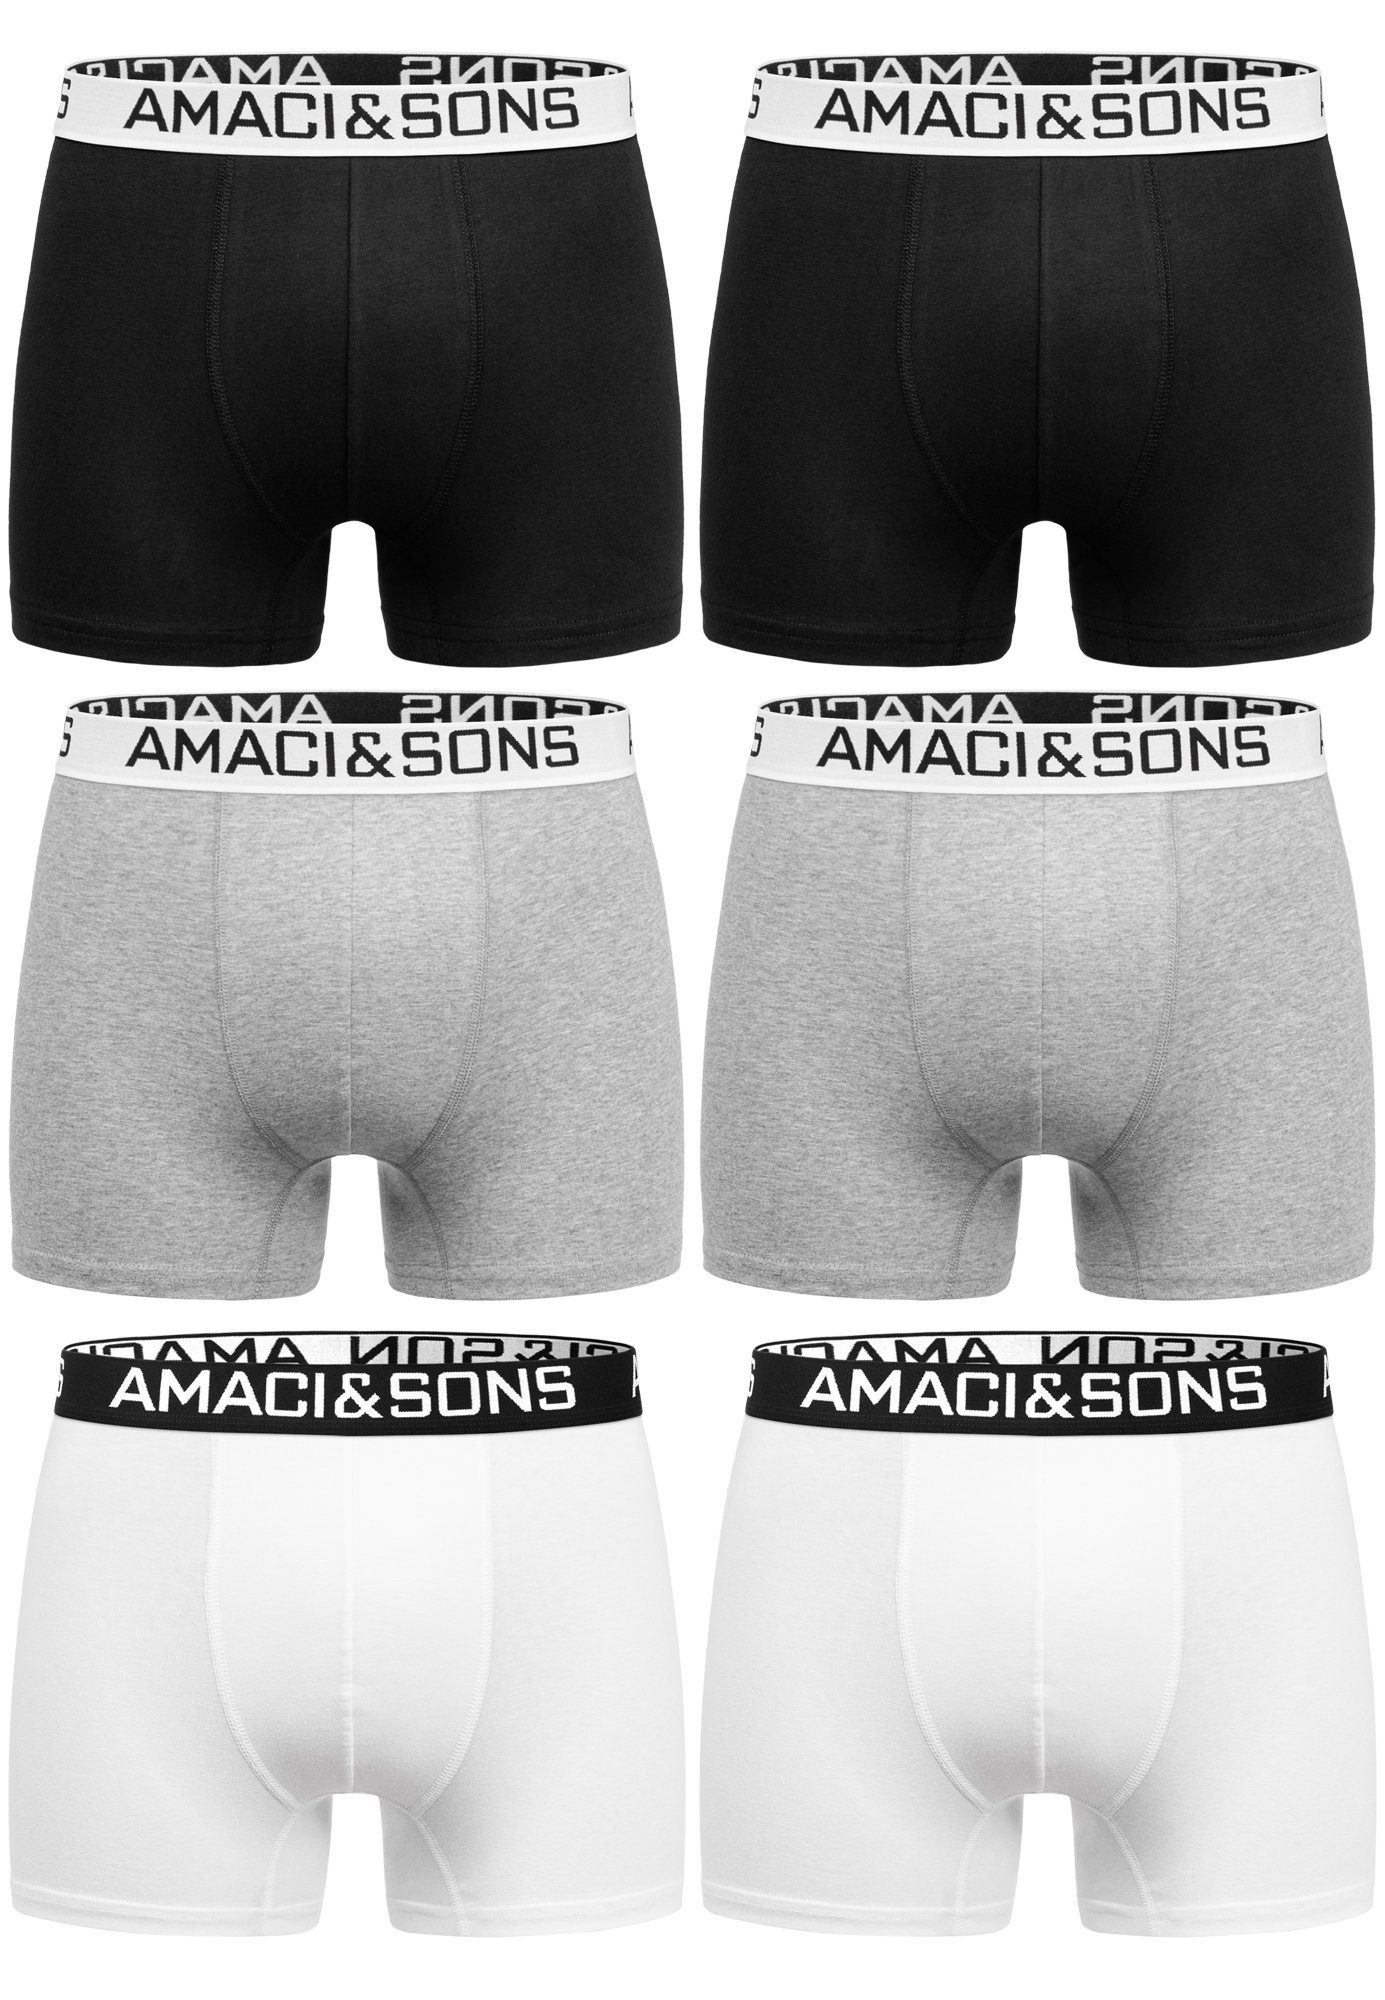 Amaci&Sons Boxershorts WESTON 6er Pack Boxershorts (6er-Pack) Herren Baumwolle Männer Unterhose Unterwäsche Mix (Hellgrau - Weiß - Schwarz)